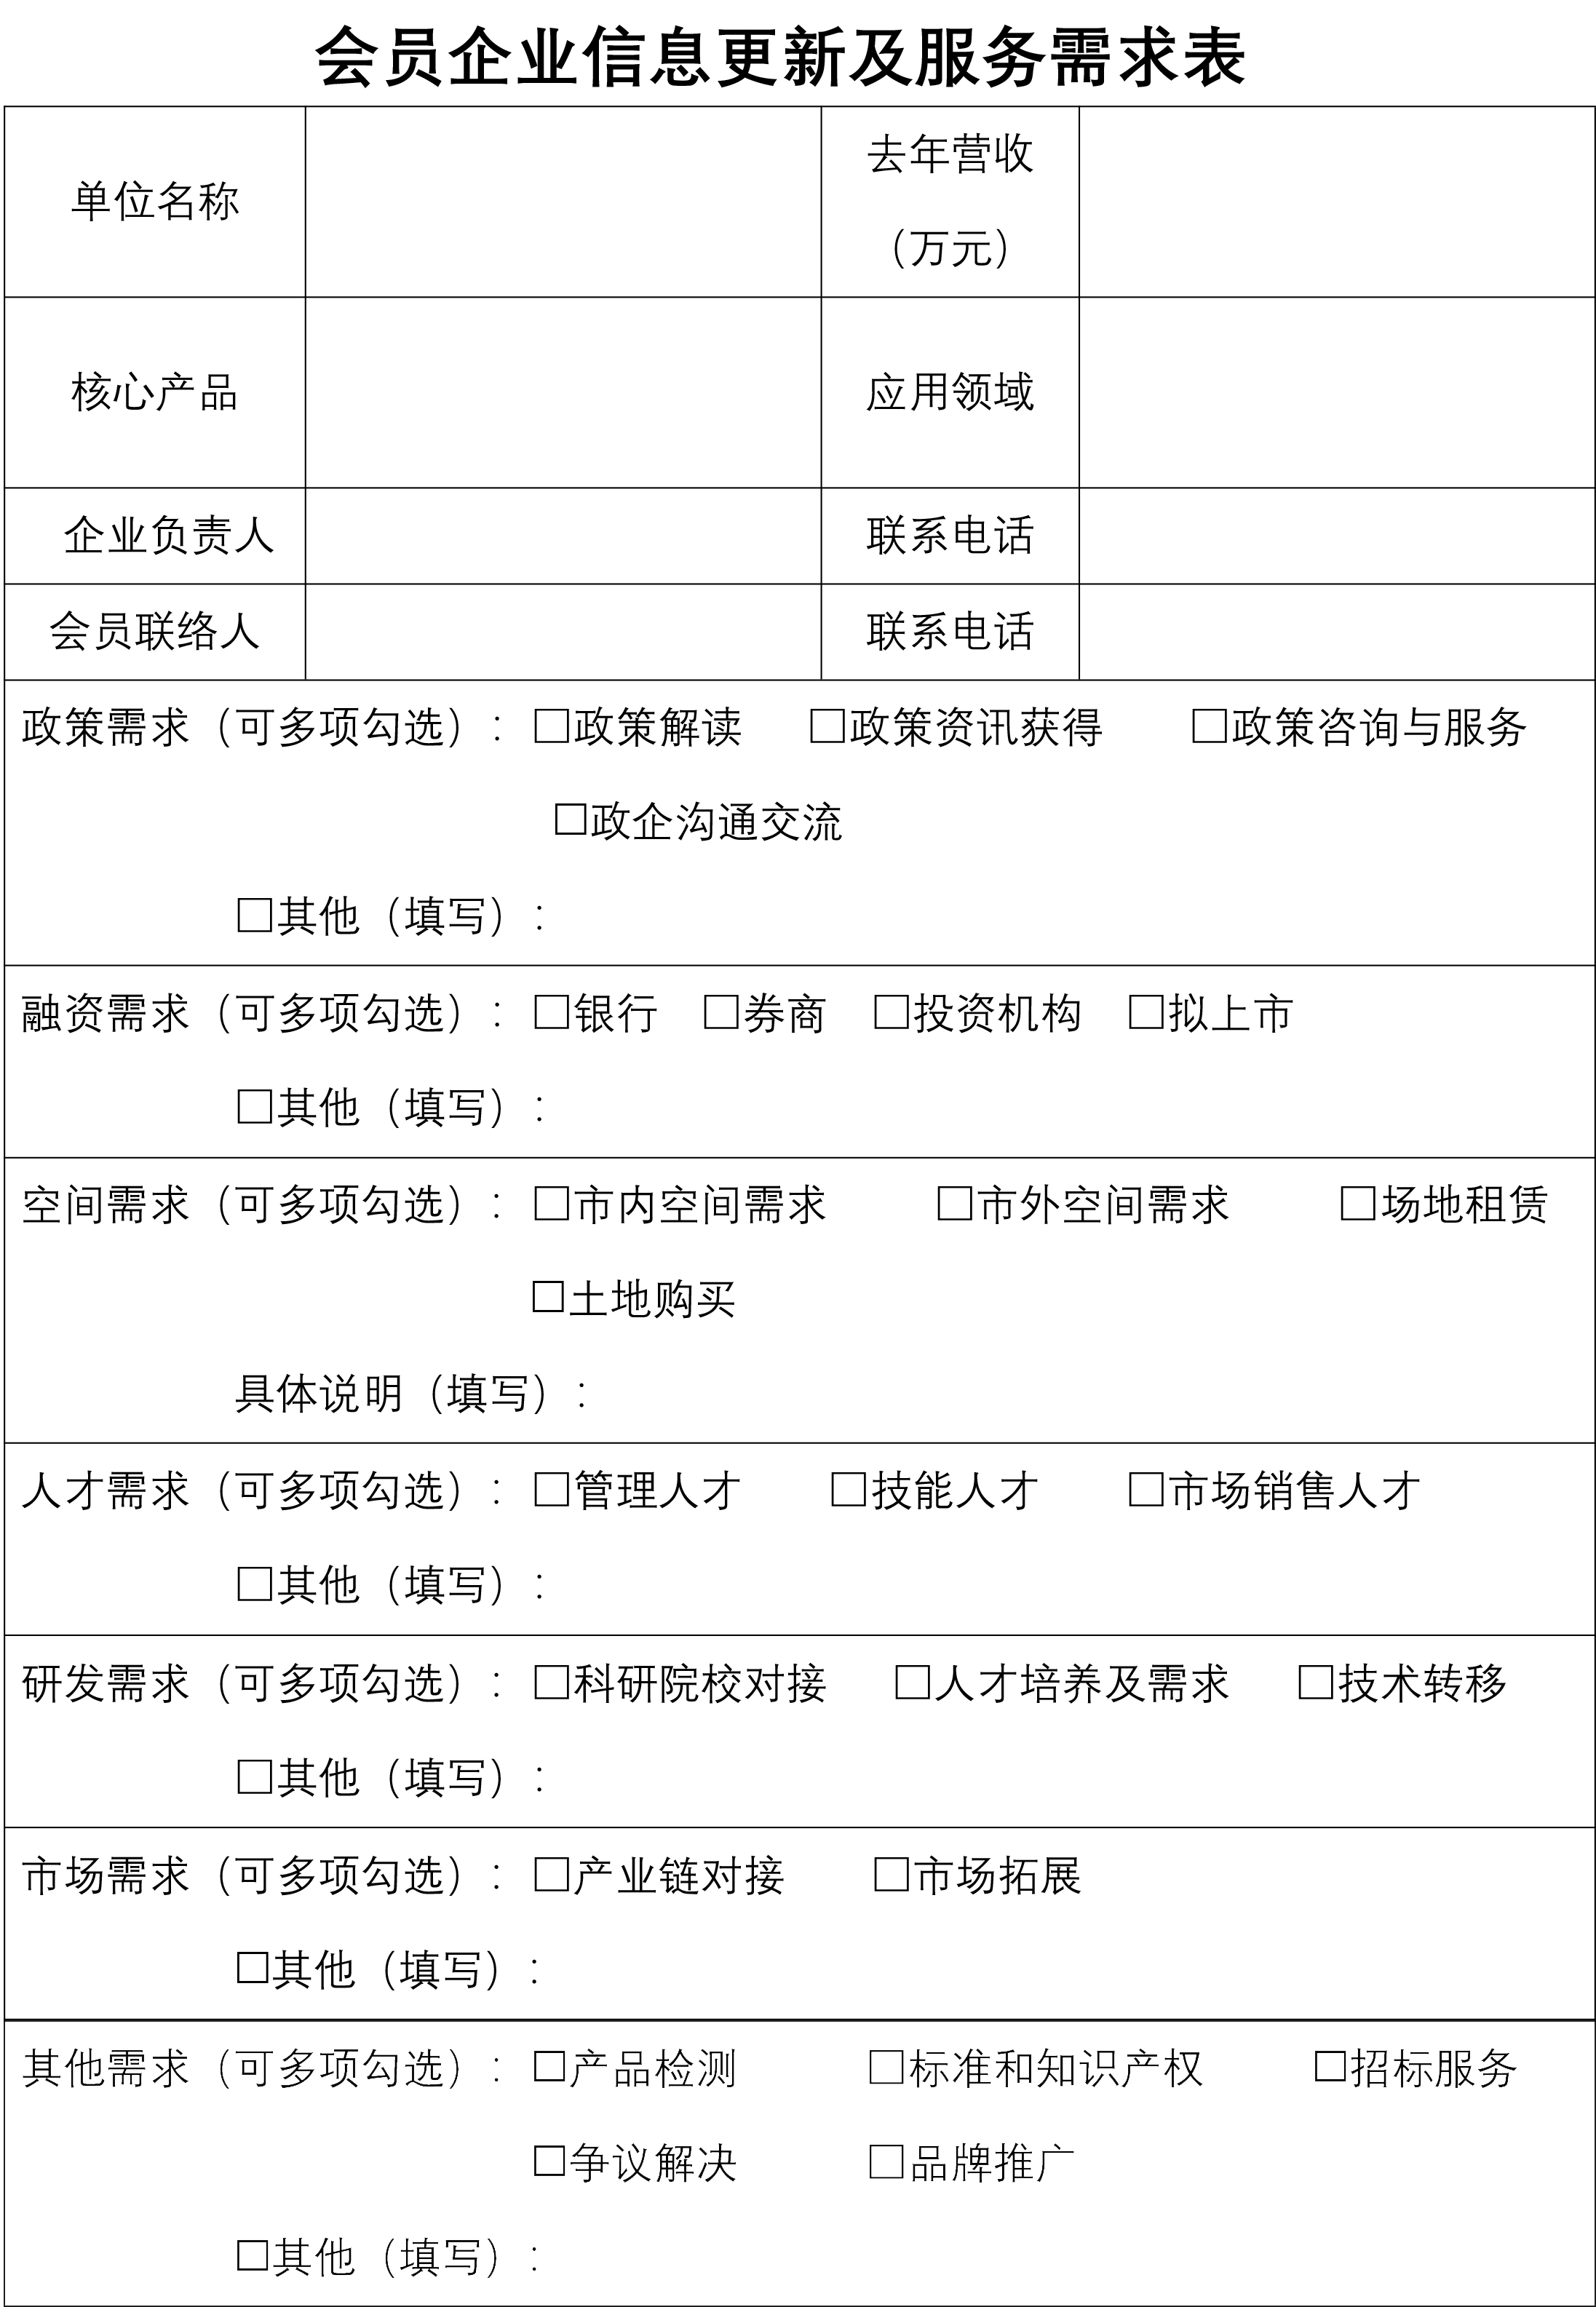 深圳市新材料行业协会会员信息更新及服务需求表-1.jpg